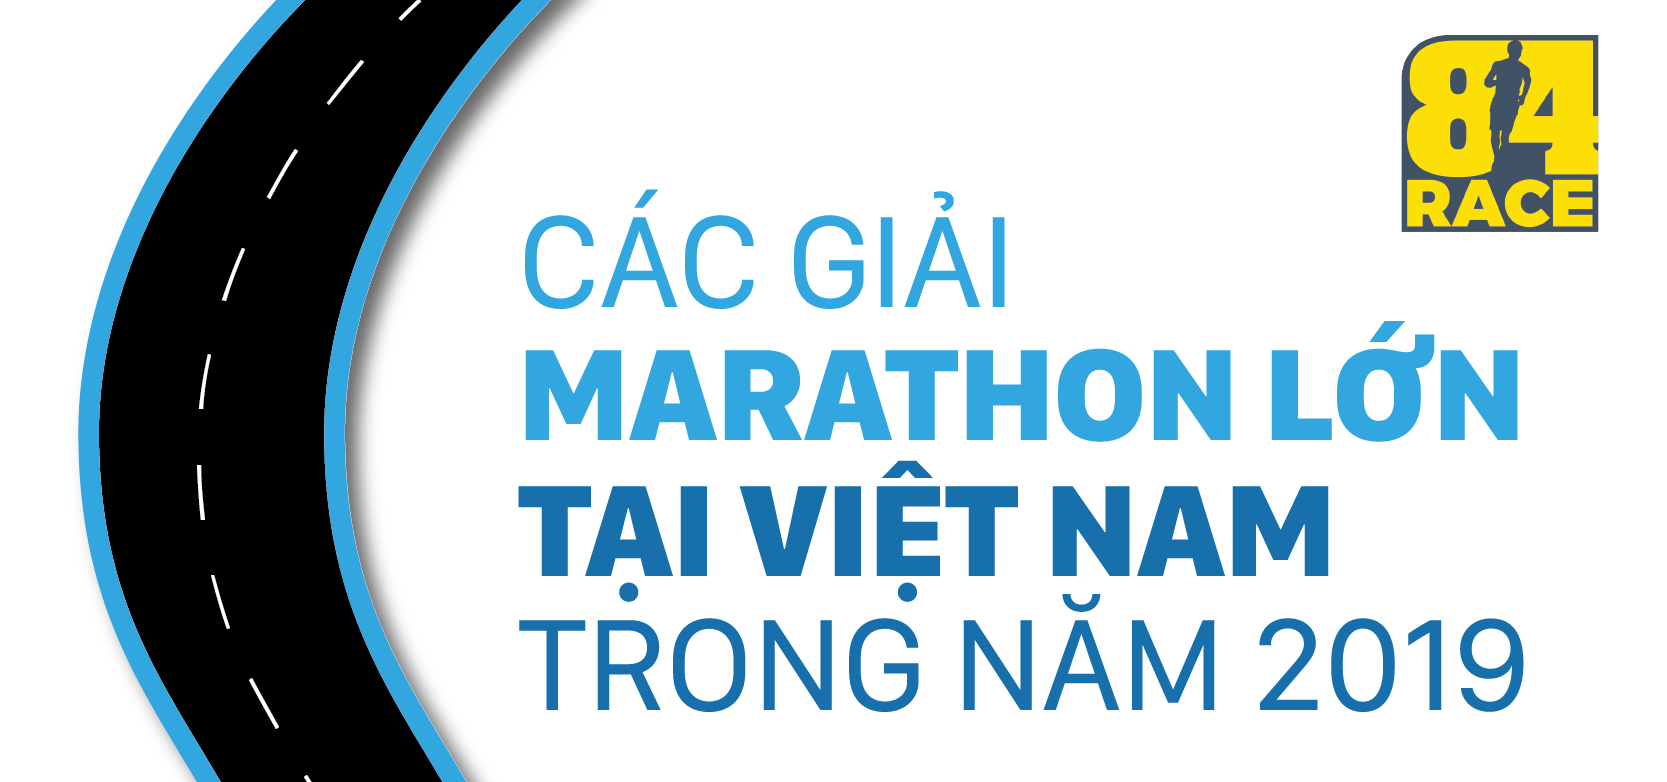 Điểm danh các giải marathon nổi bật nhất tại Việt Nam trong năm 2019